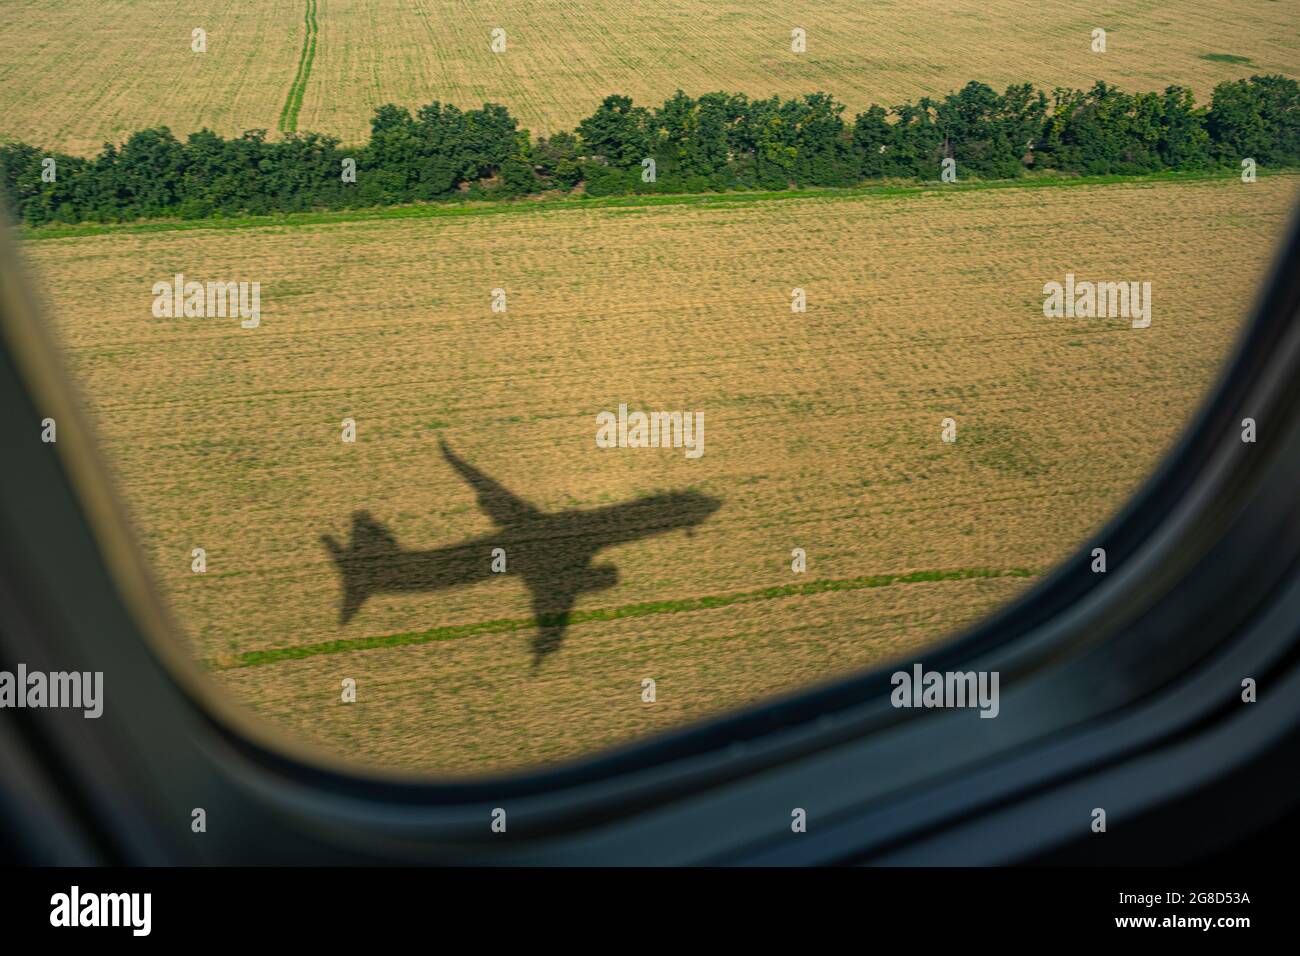 Ebene. Blick aus dem Flugzeugfenster. Der Schatten eines Flugzeuges auf einem gelben Sonnenblumenfeld. Situet. Blick von oben. Reisekonzept. Bullauge Stockfoto